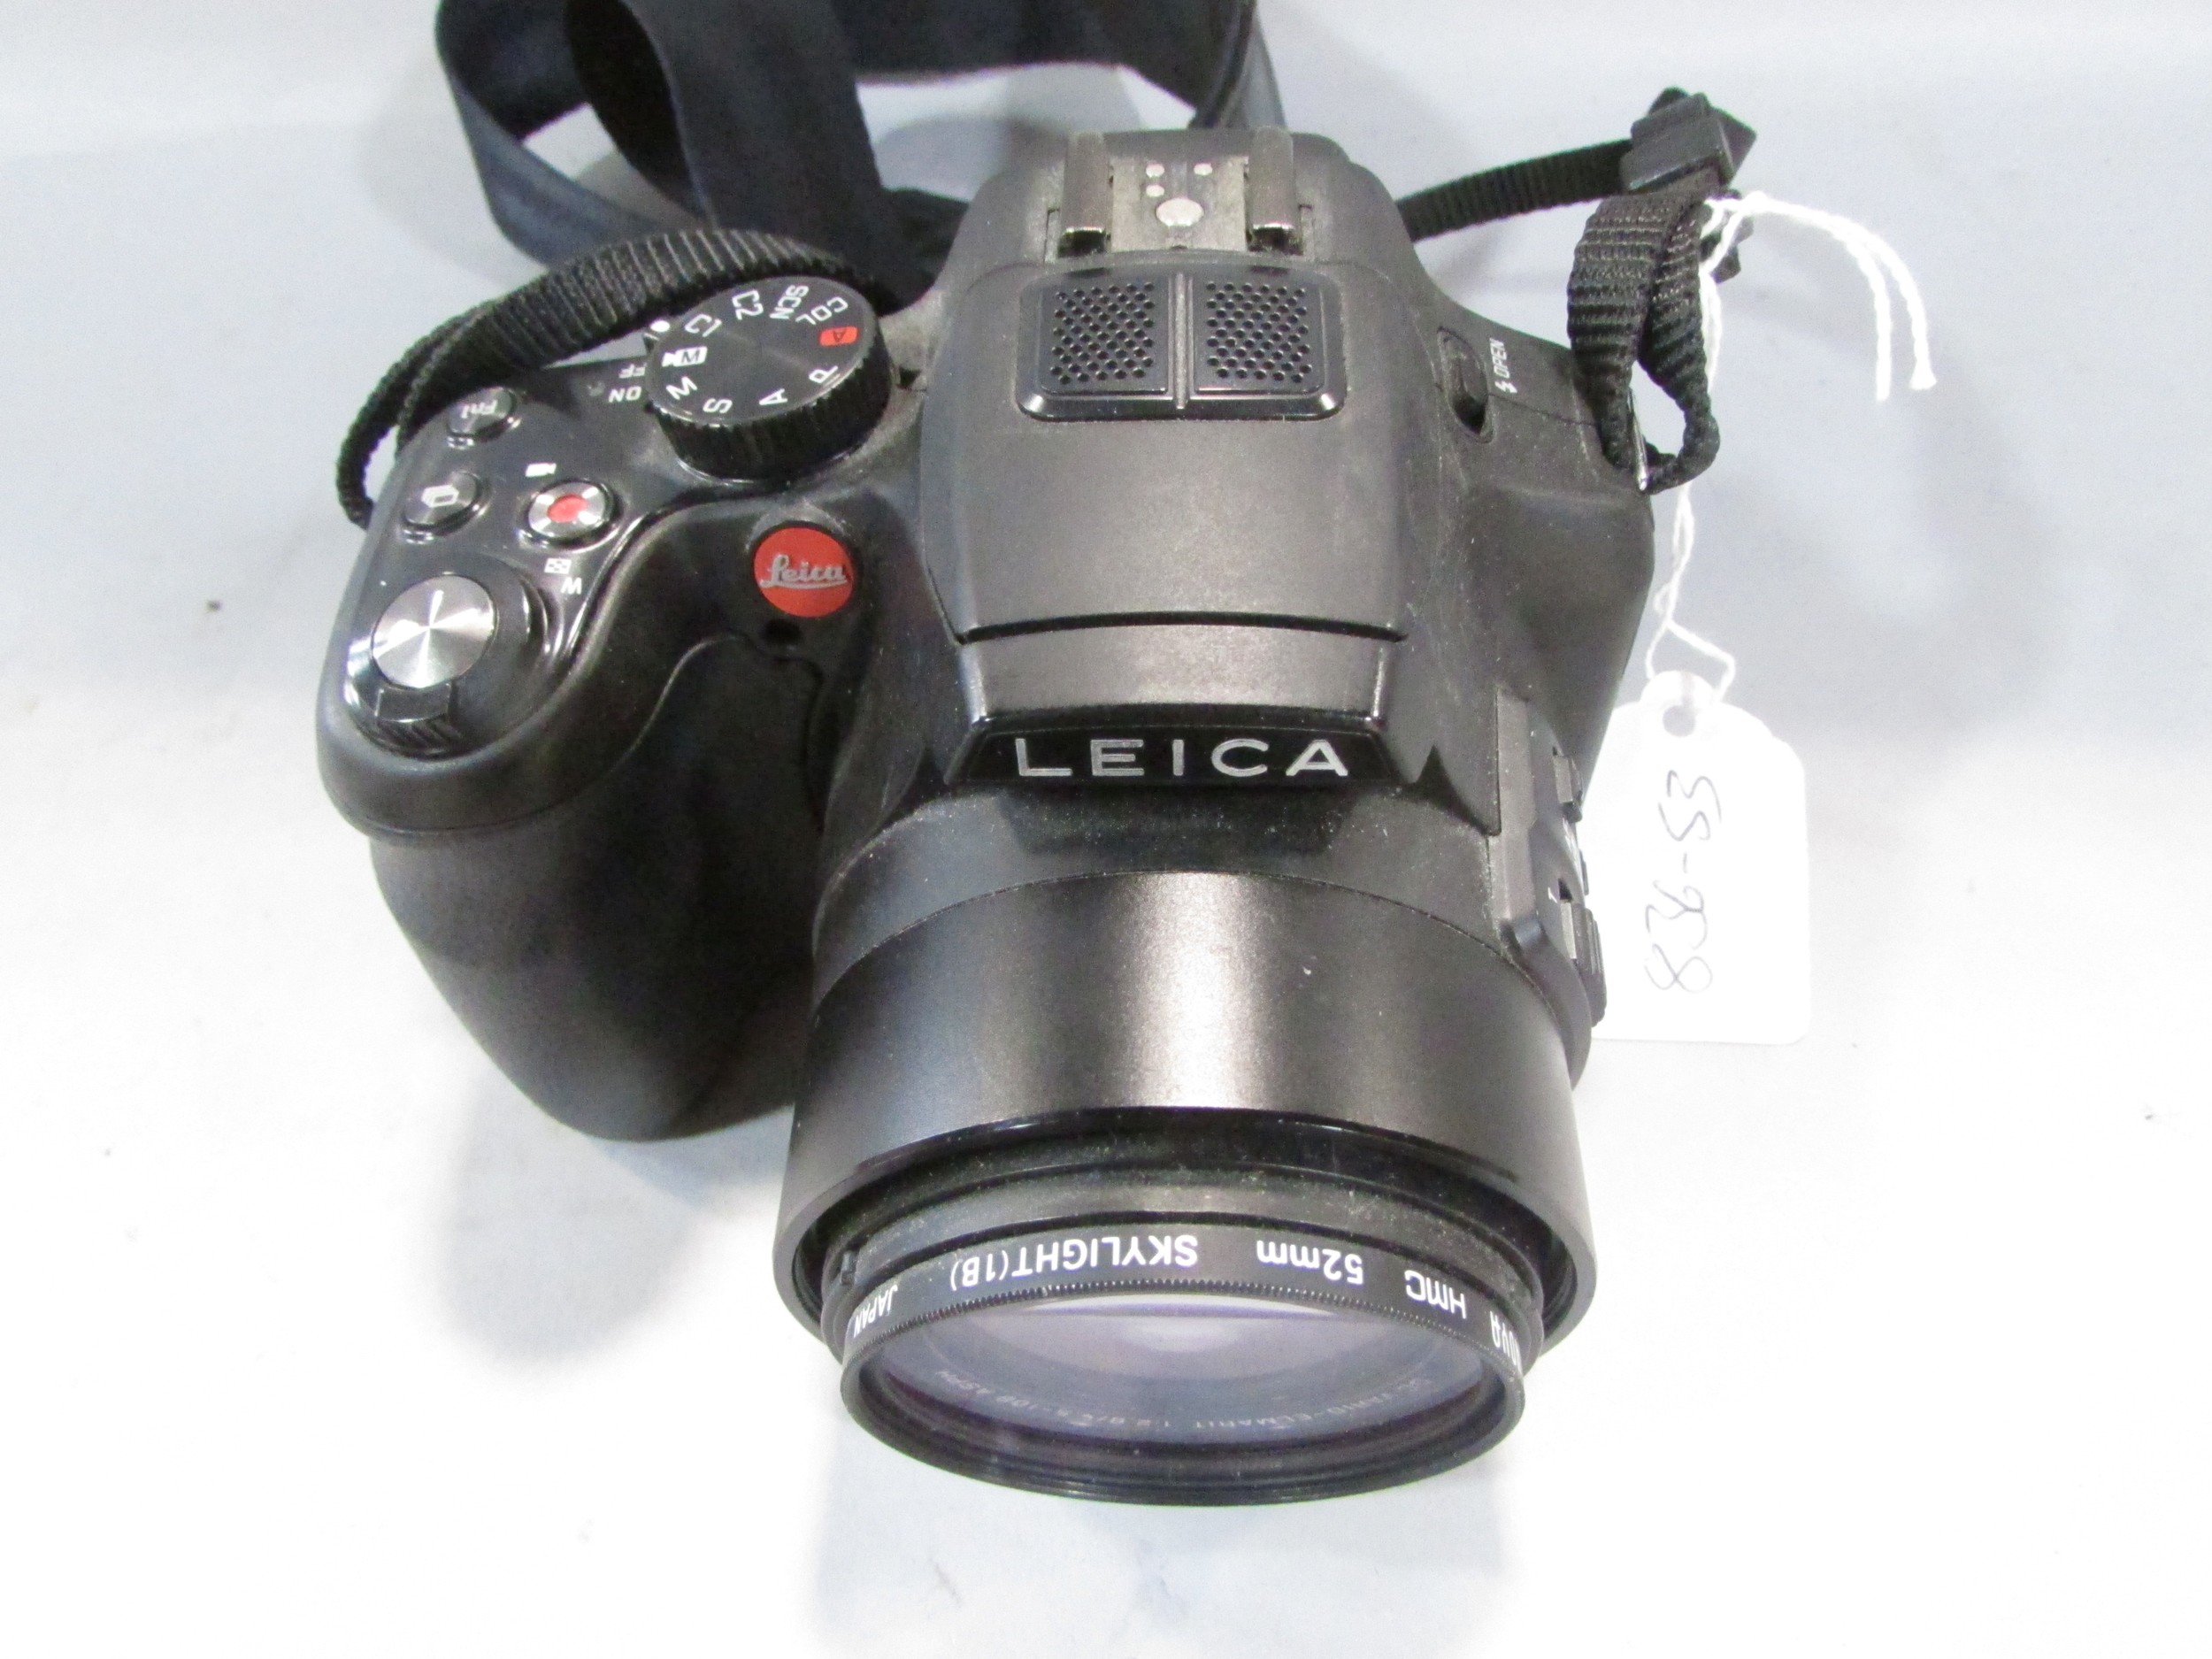 A Leica V Lux 4 camera and a Leica carry bag - Image 4 of 6